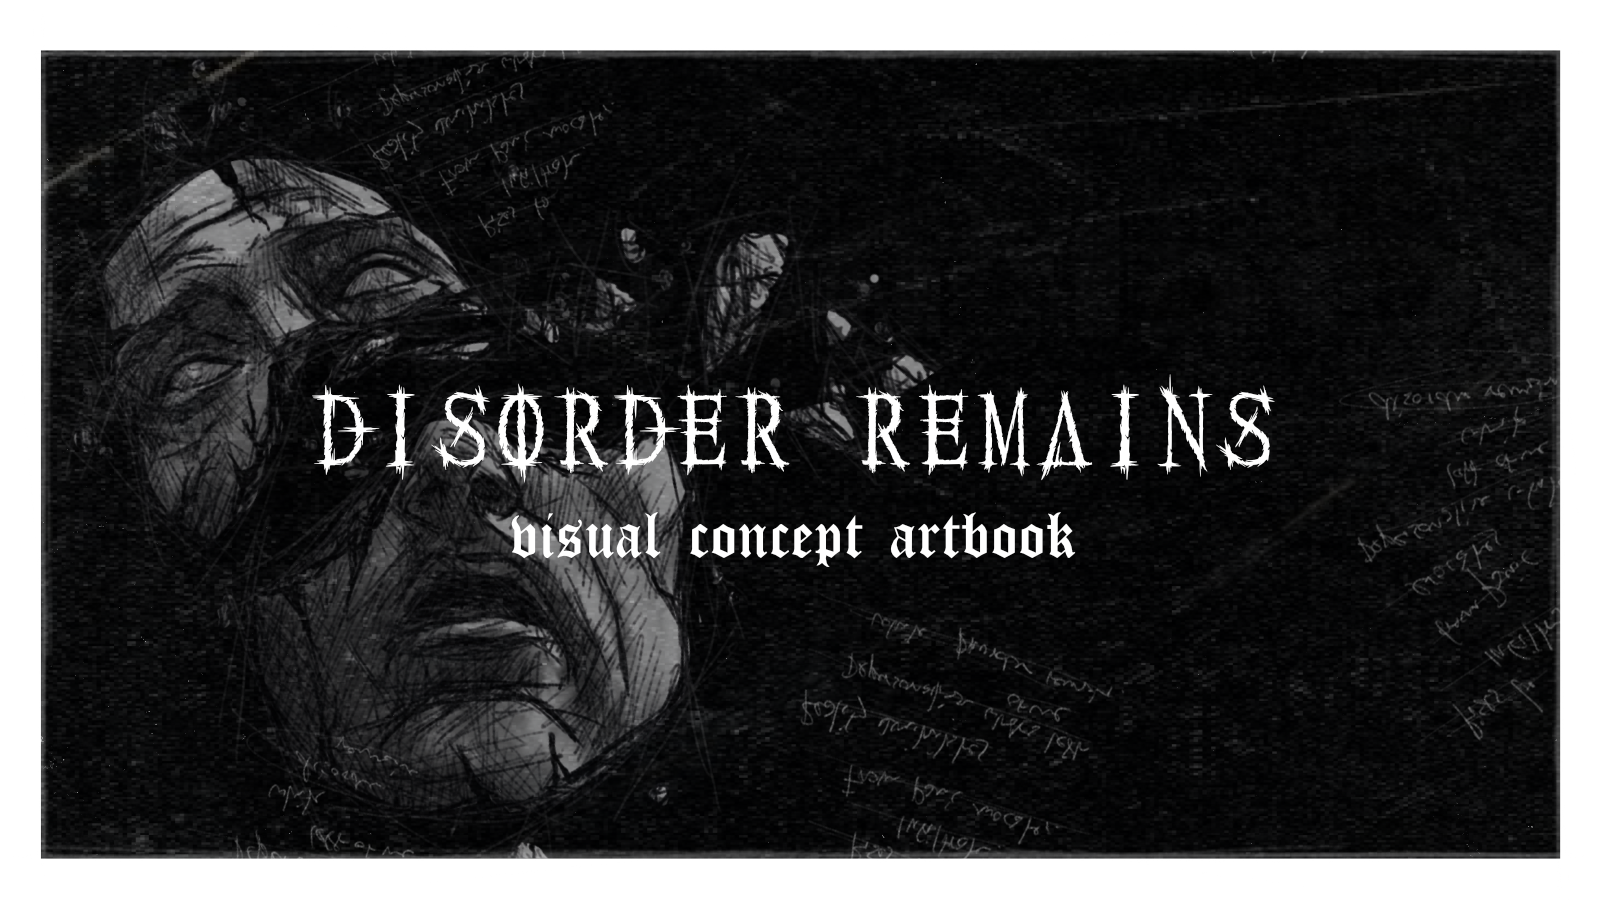 Das Titelbild zur Projektvorstellung von Betrayal - Disorder Remains Artwork, das die skizzenhafte Illustration eines zerbrochenen Statuen-Gesichts im Hintergrund des Titels zeigt